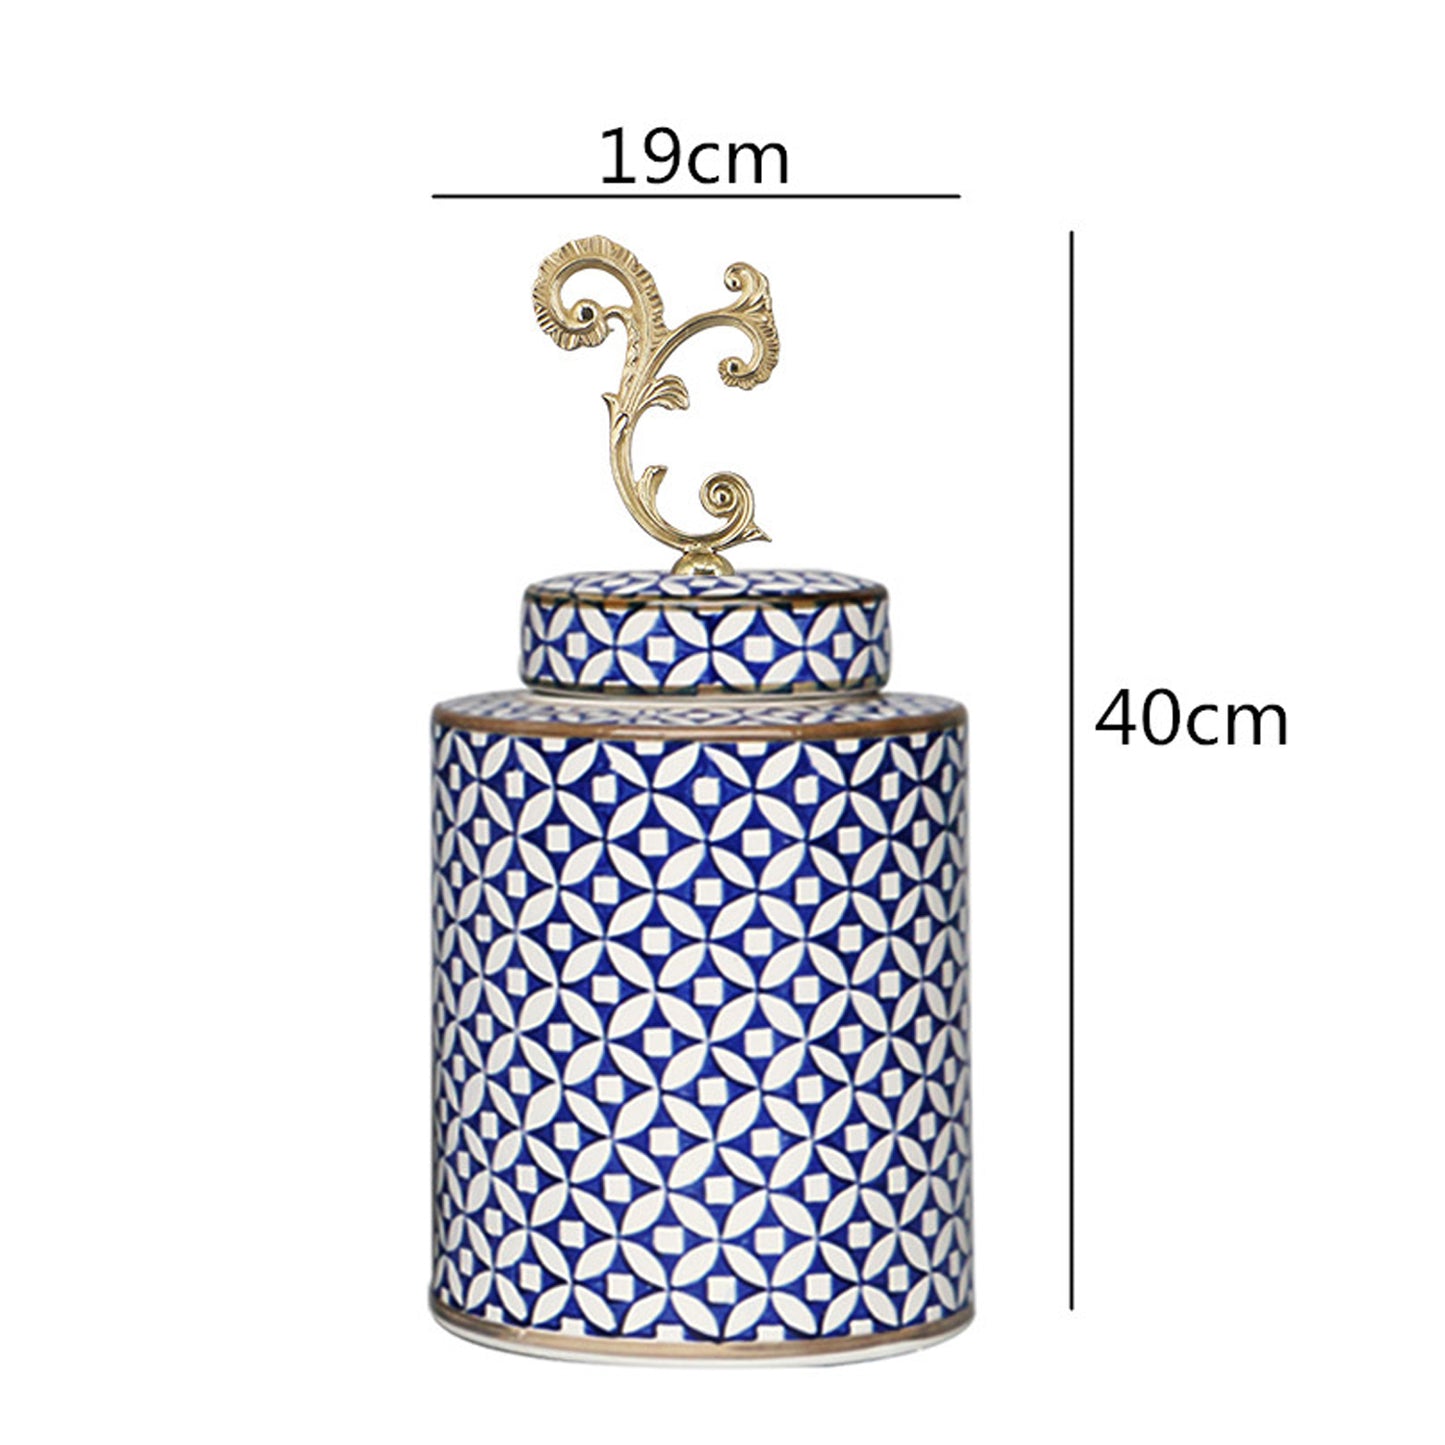 Blue-and-White Porcelain Vase